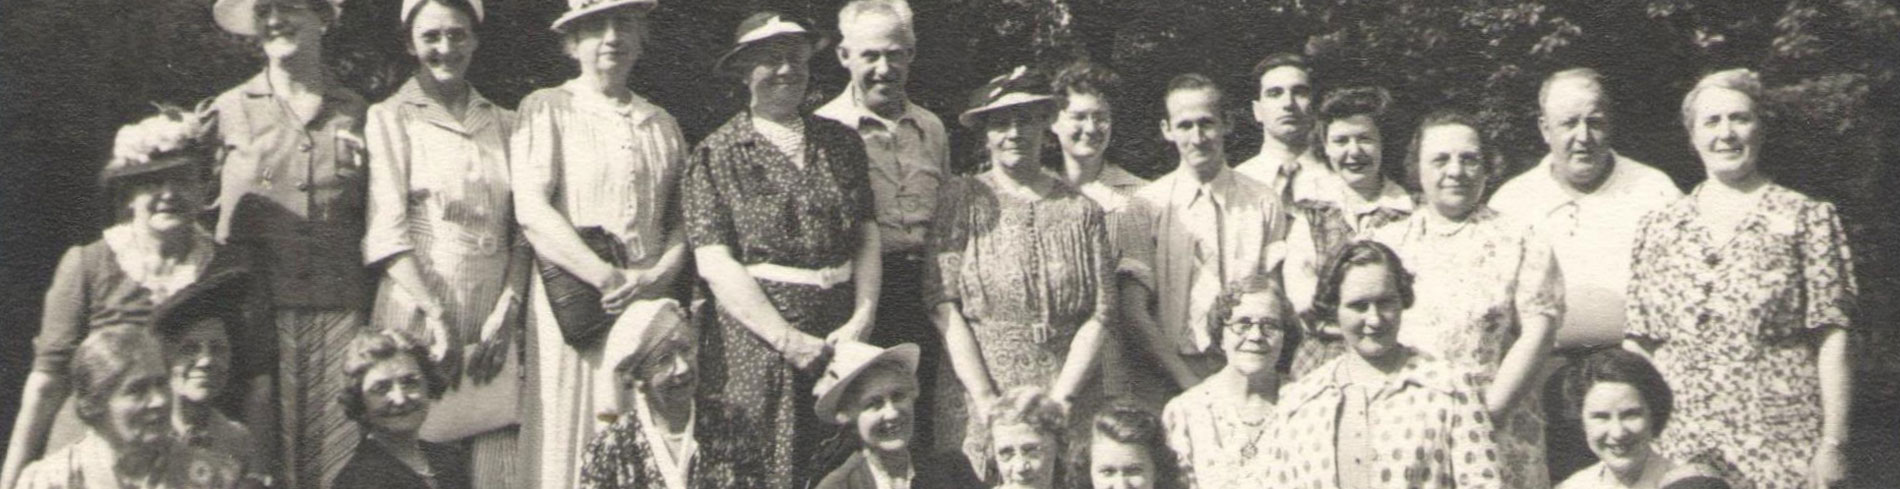 Una foto en blanco y negro de un grupo de mujeres y hombres que estaban involucrados en la Sociedad Auditiva de Chicago hace mucho tiempo